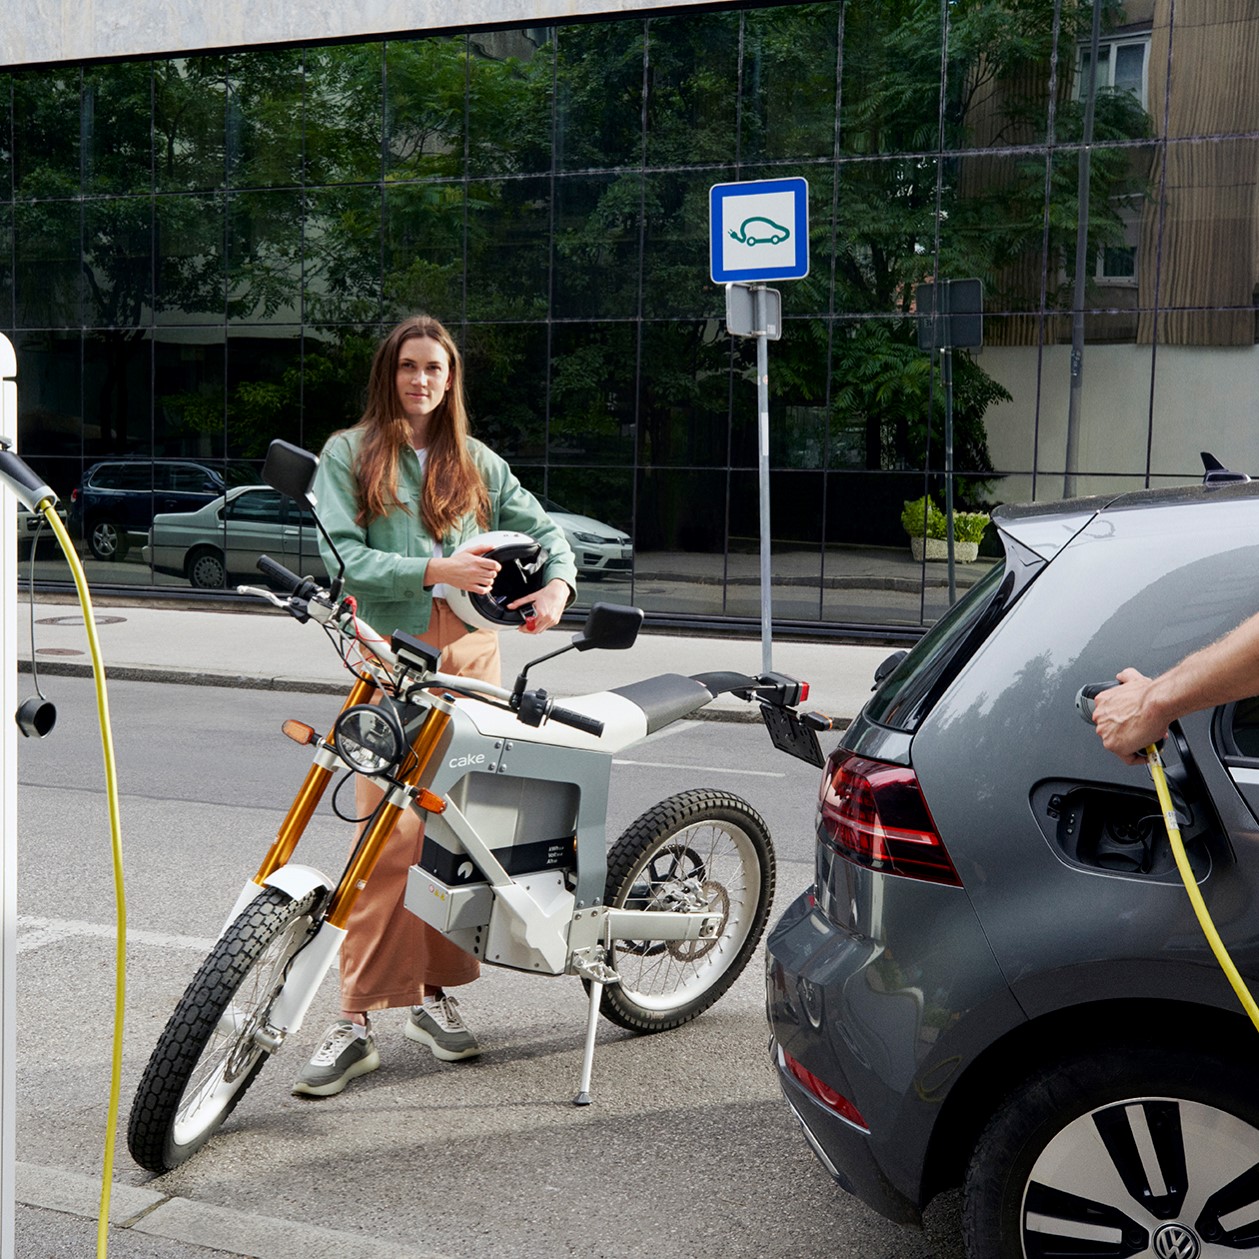 Frau steht hinter einem elektrischem Motorrad, E-Auto wird von Mann geladen